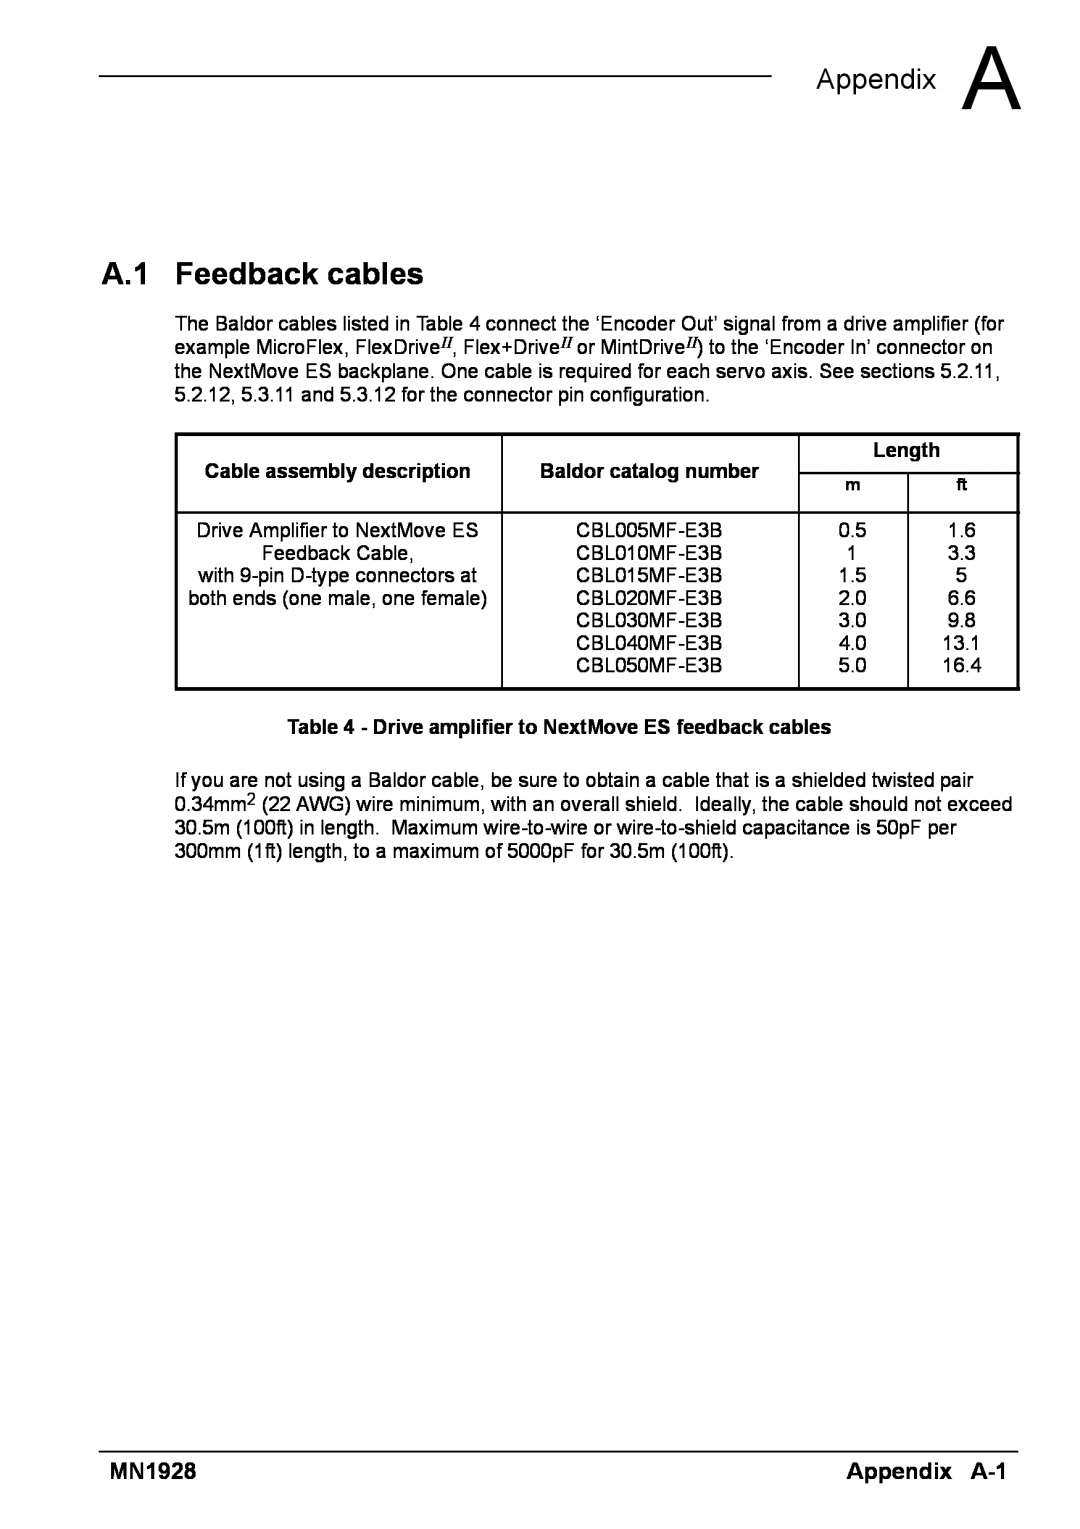 Baldor MN1928 installation manual A.1 Feedback cables, A Appendix A, Appendix A-1, Baldor catalog number, Length 